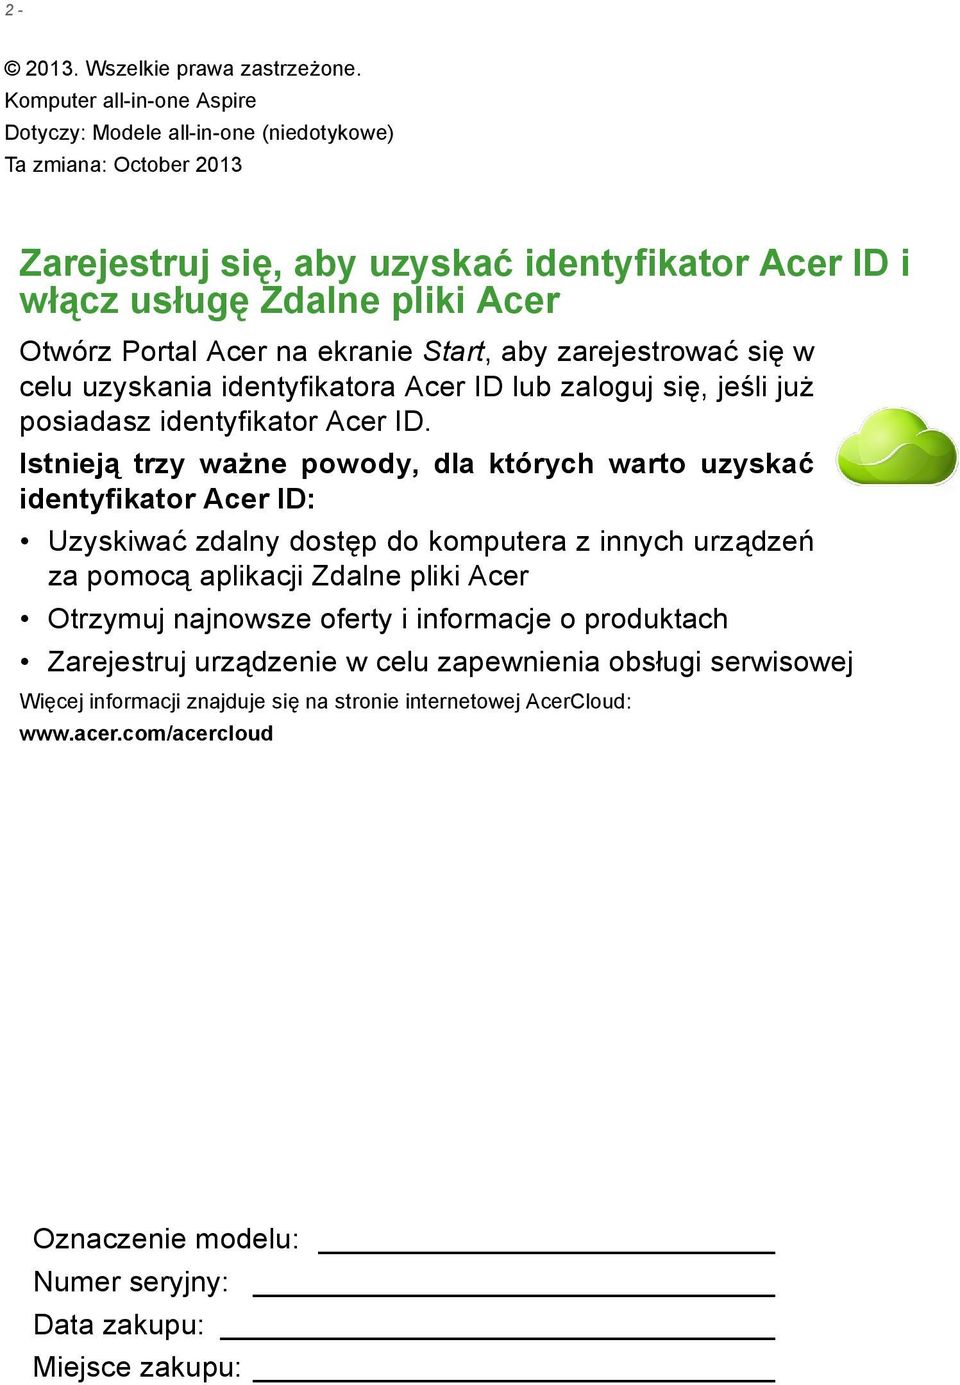 ekranie Start, aby zarejestrować się w celu uzyskania identyfikatora Acer ID lub zaloguj się, jeśli już posiadasz identyfikator Acer ID.